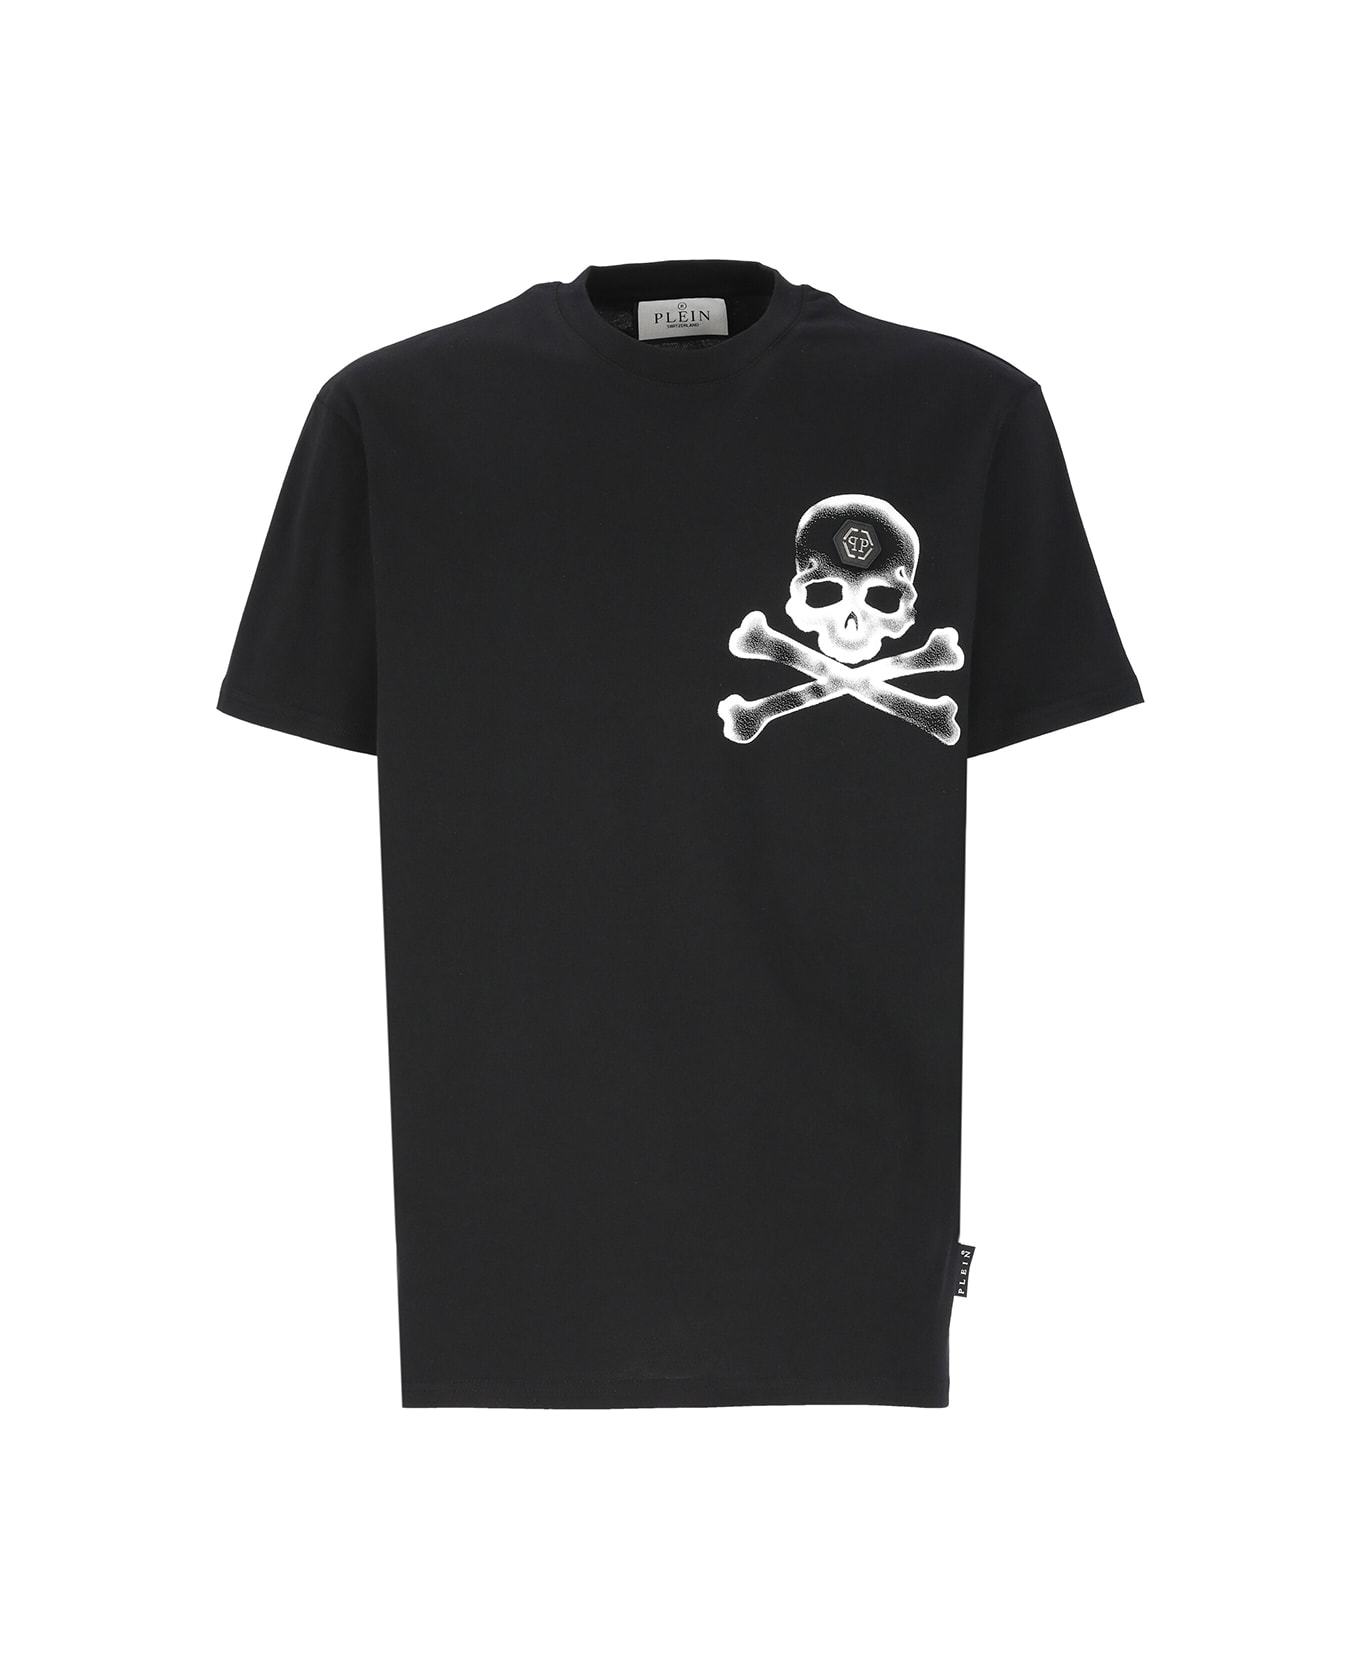 Philipp Plein Round Neck Ss Gothic Plein T-shirt - Black